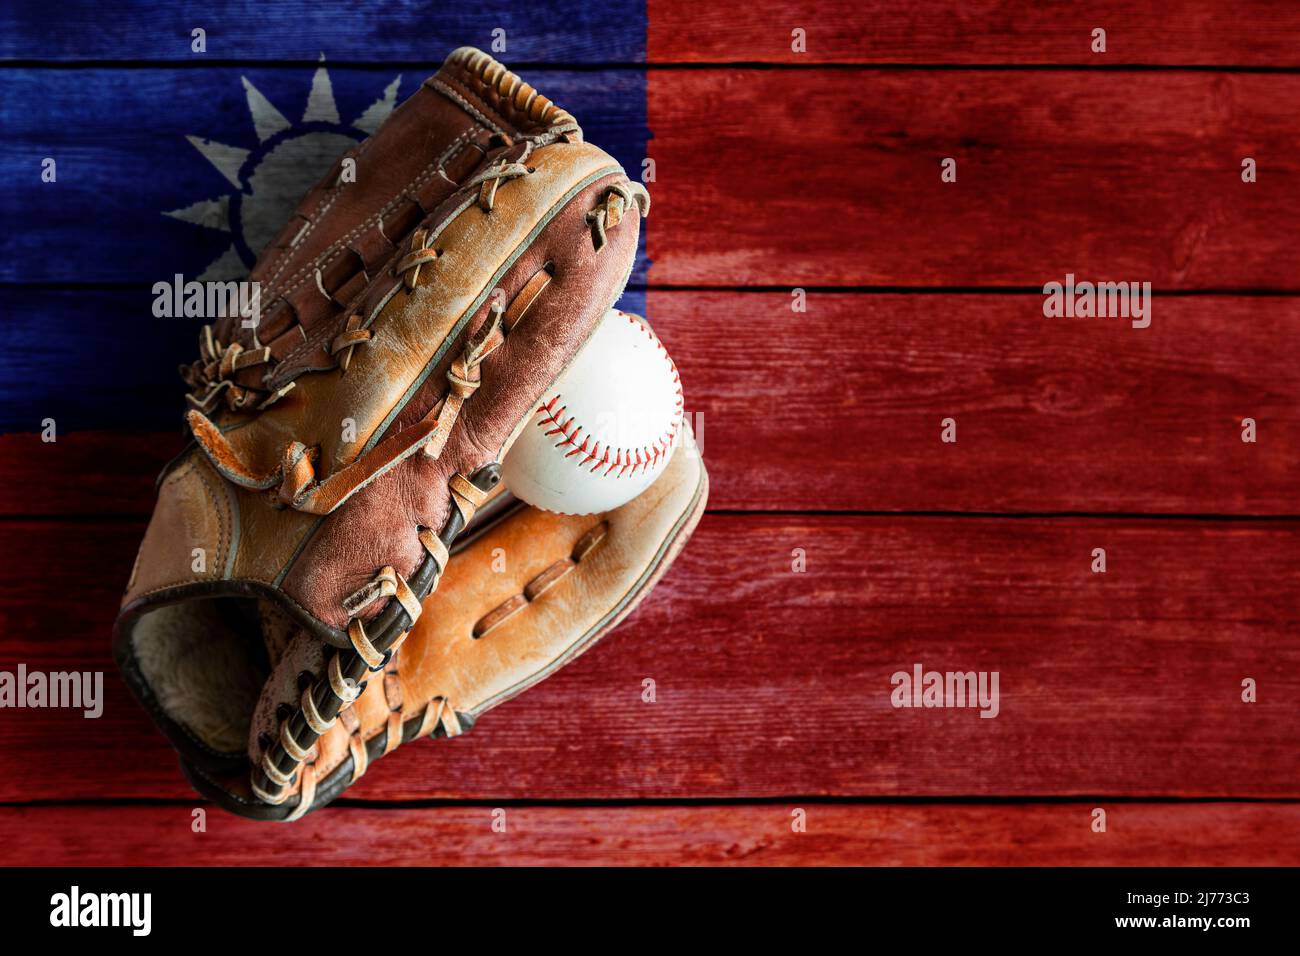 Guante de béisbol de cuero con pelota sobre fondo rústico de madera con bandera taiwanesa pintada y espacio de copia. Taiwán, también conocido como Taipei Chino, es uno de ellos Foto de stock